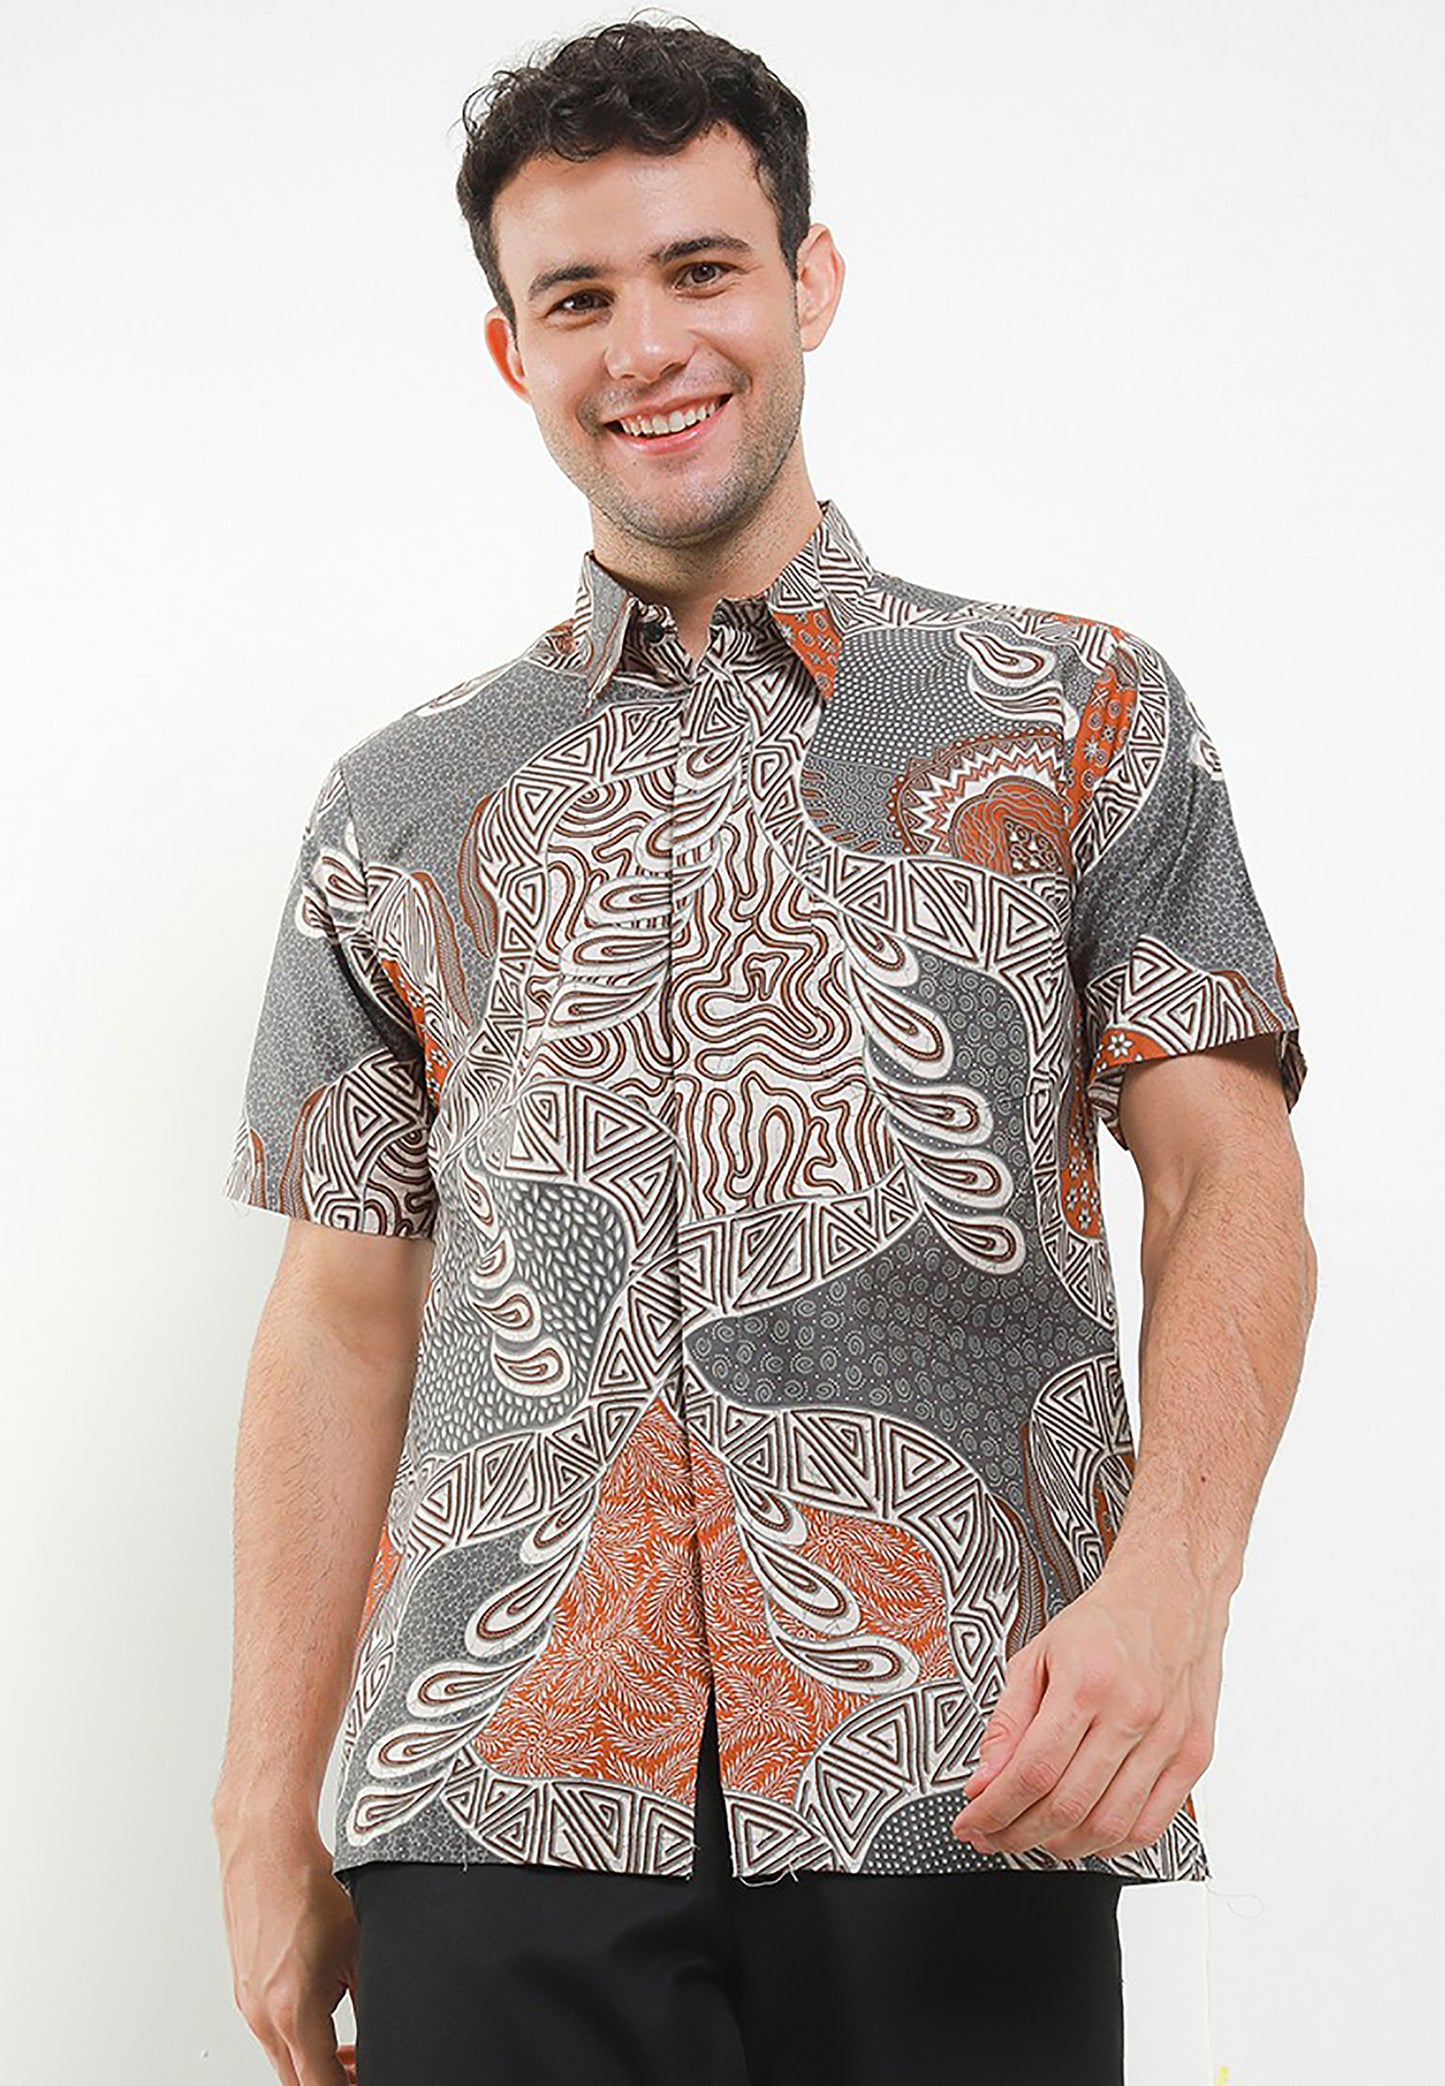 Aquatic Elegance Arjuna Weda Batik Shirt for Men with Sejar Tetes Banyu Pattern, Men Batik, Batik, Men Batik Shirt, Men's Batik Shirts